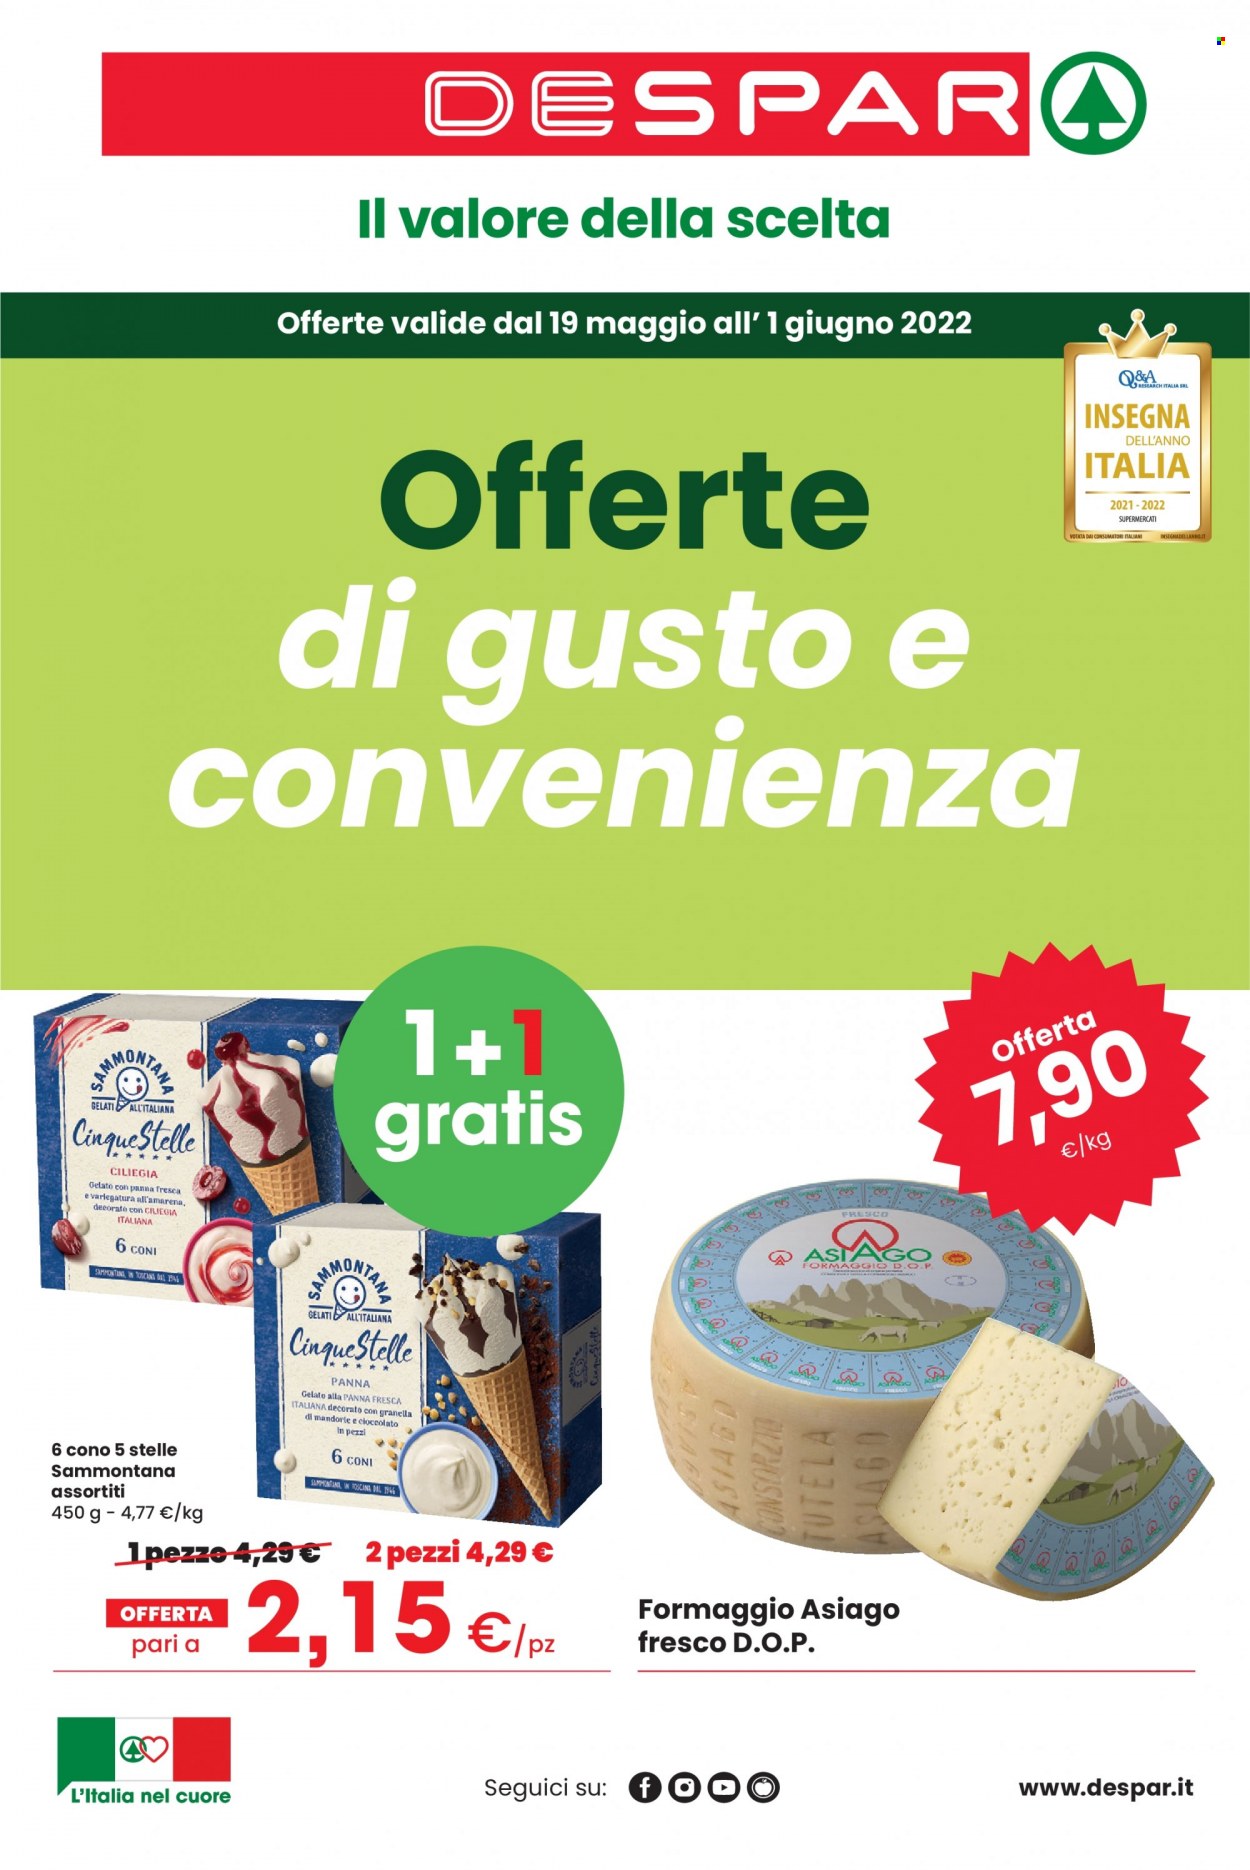 thumbnail - Volantino Despar - 19/5/2022 - 1/6/2022 - Prodotti in offerta - formaggio, Asiago, gelato, Sammontana. Pagina 1.